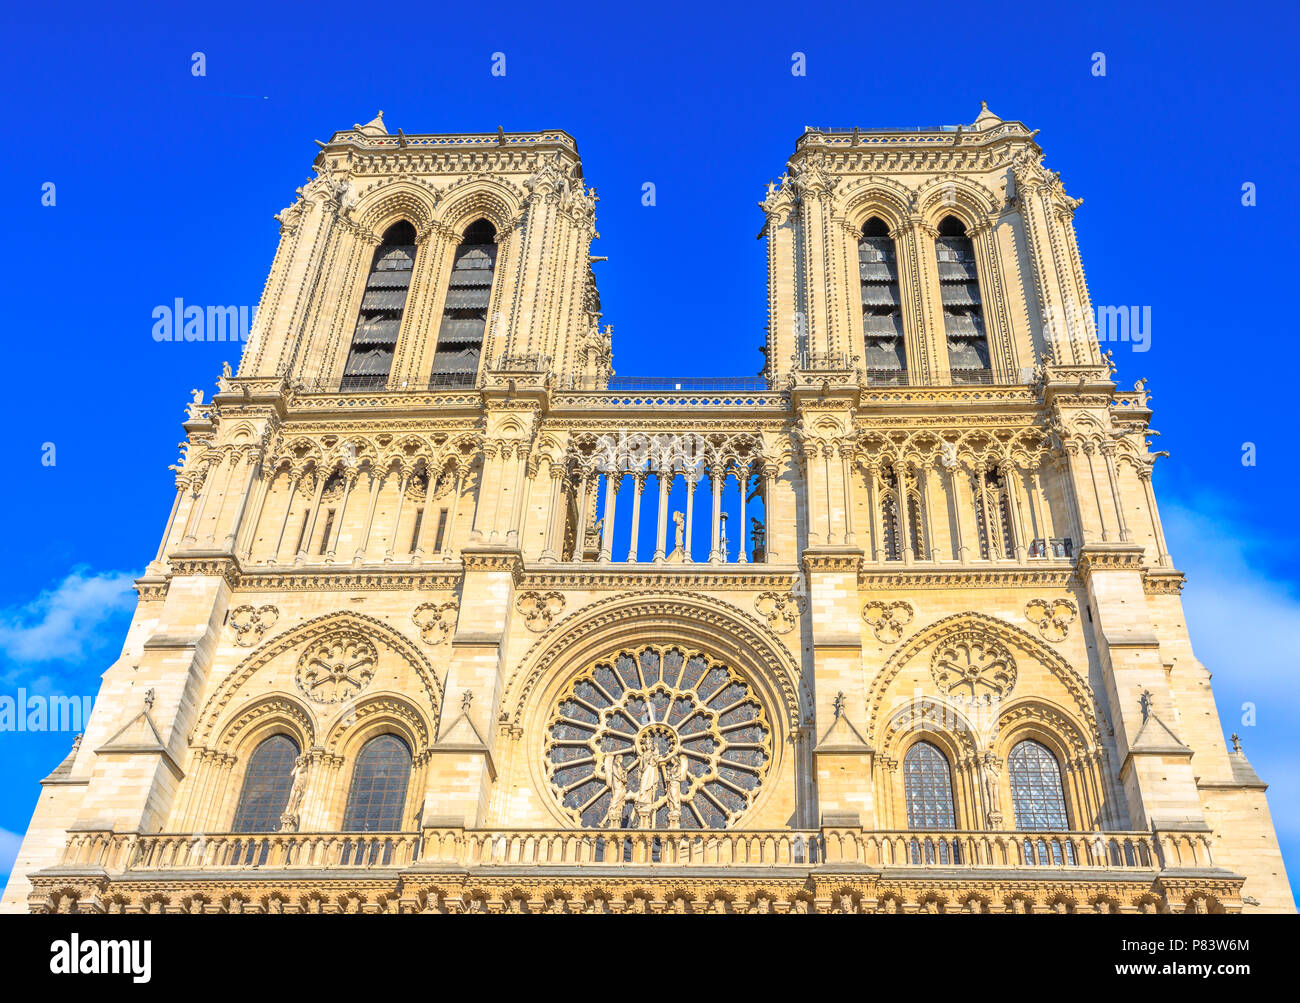 Dettagli dell'architettura francese della cattedrale di Notre Dame di Parigi, Francia. Bella giornata di sole nel cielo blu. Nostra Signora di Parigi chiesa. Centrale di facciata principale con torri e rosette gotiche. Foto Stock